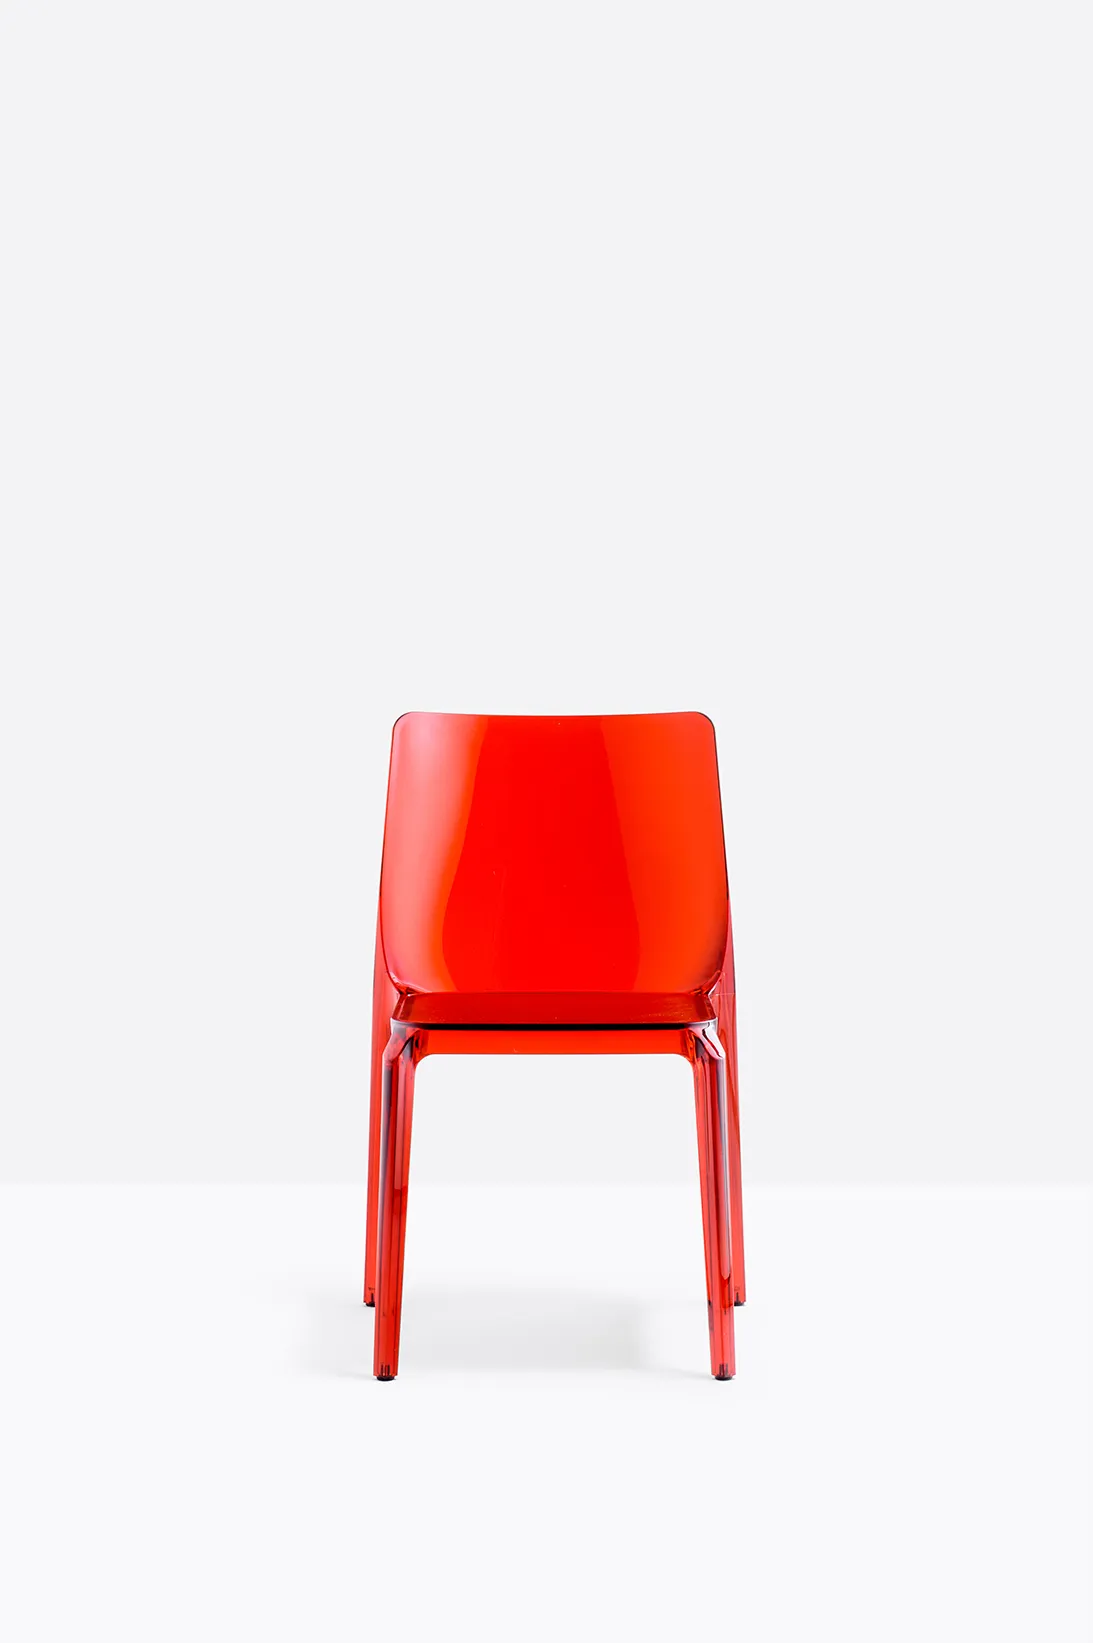 Stuhl BLITZ 640 - Stapelstuhl von Pedrali SA - sand